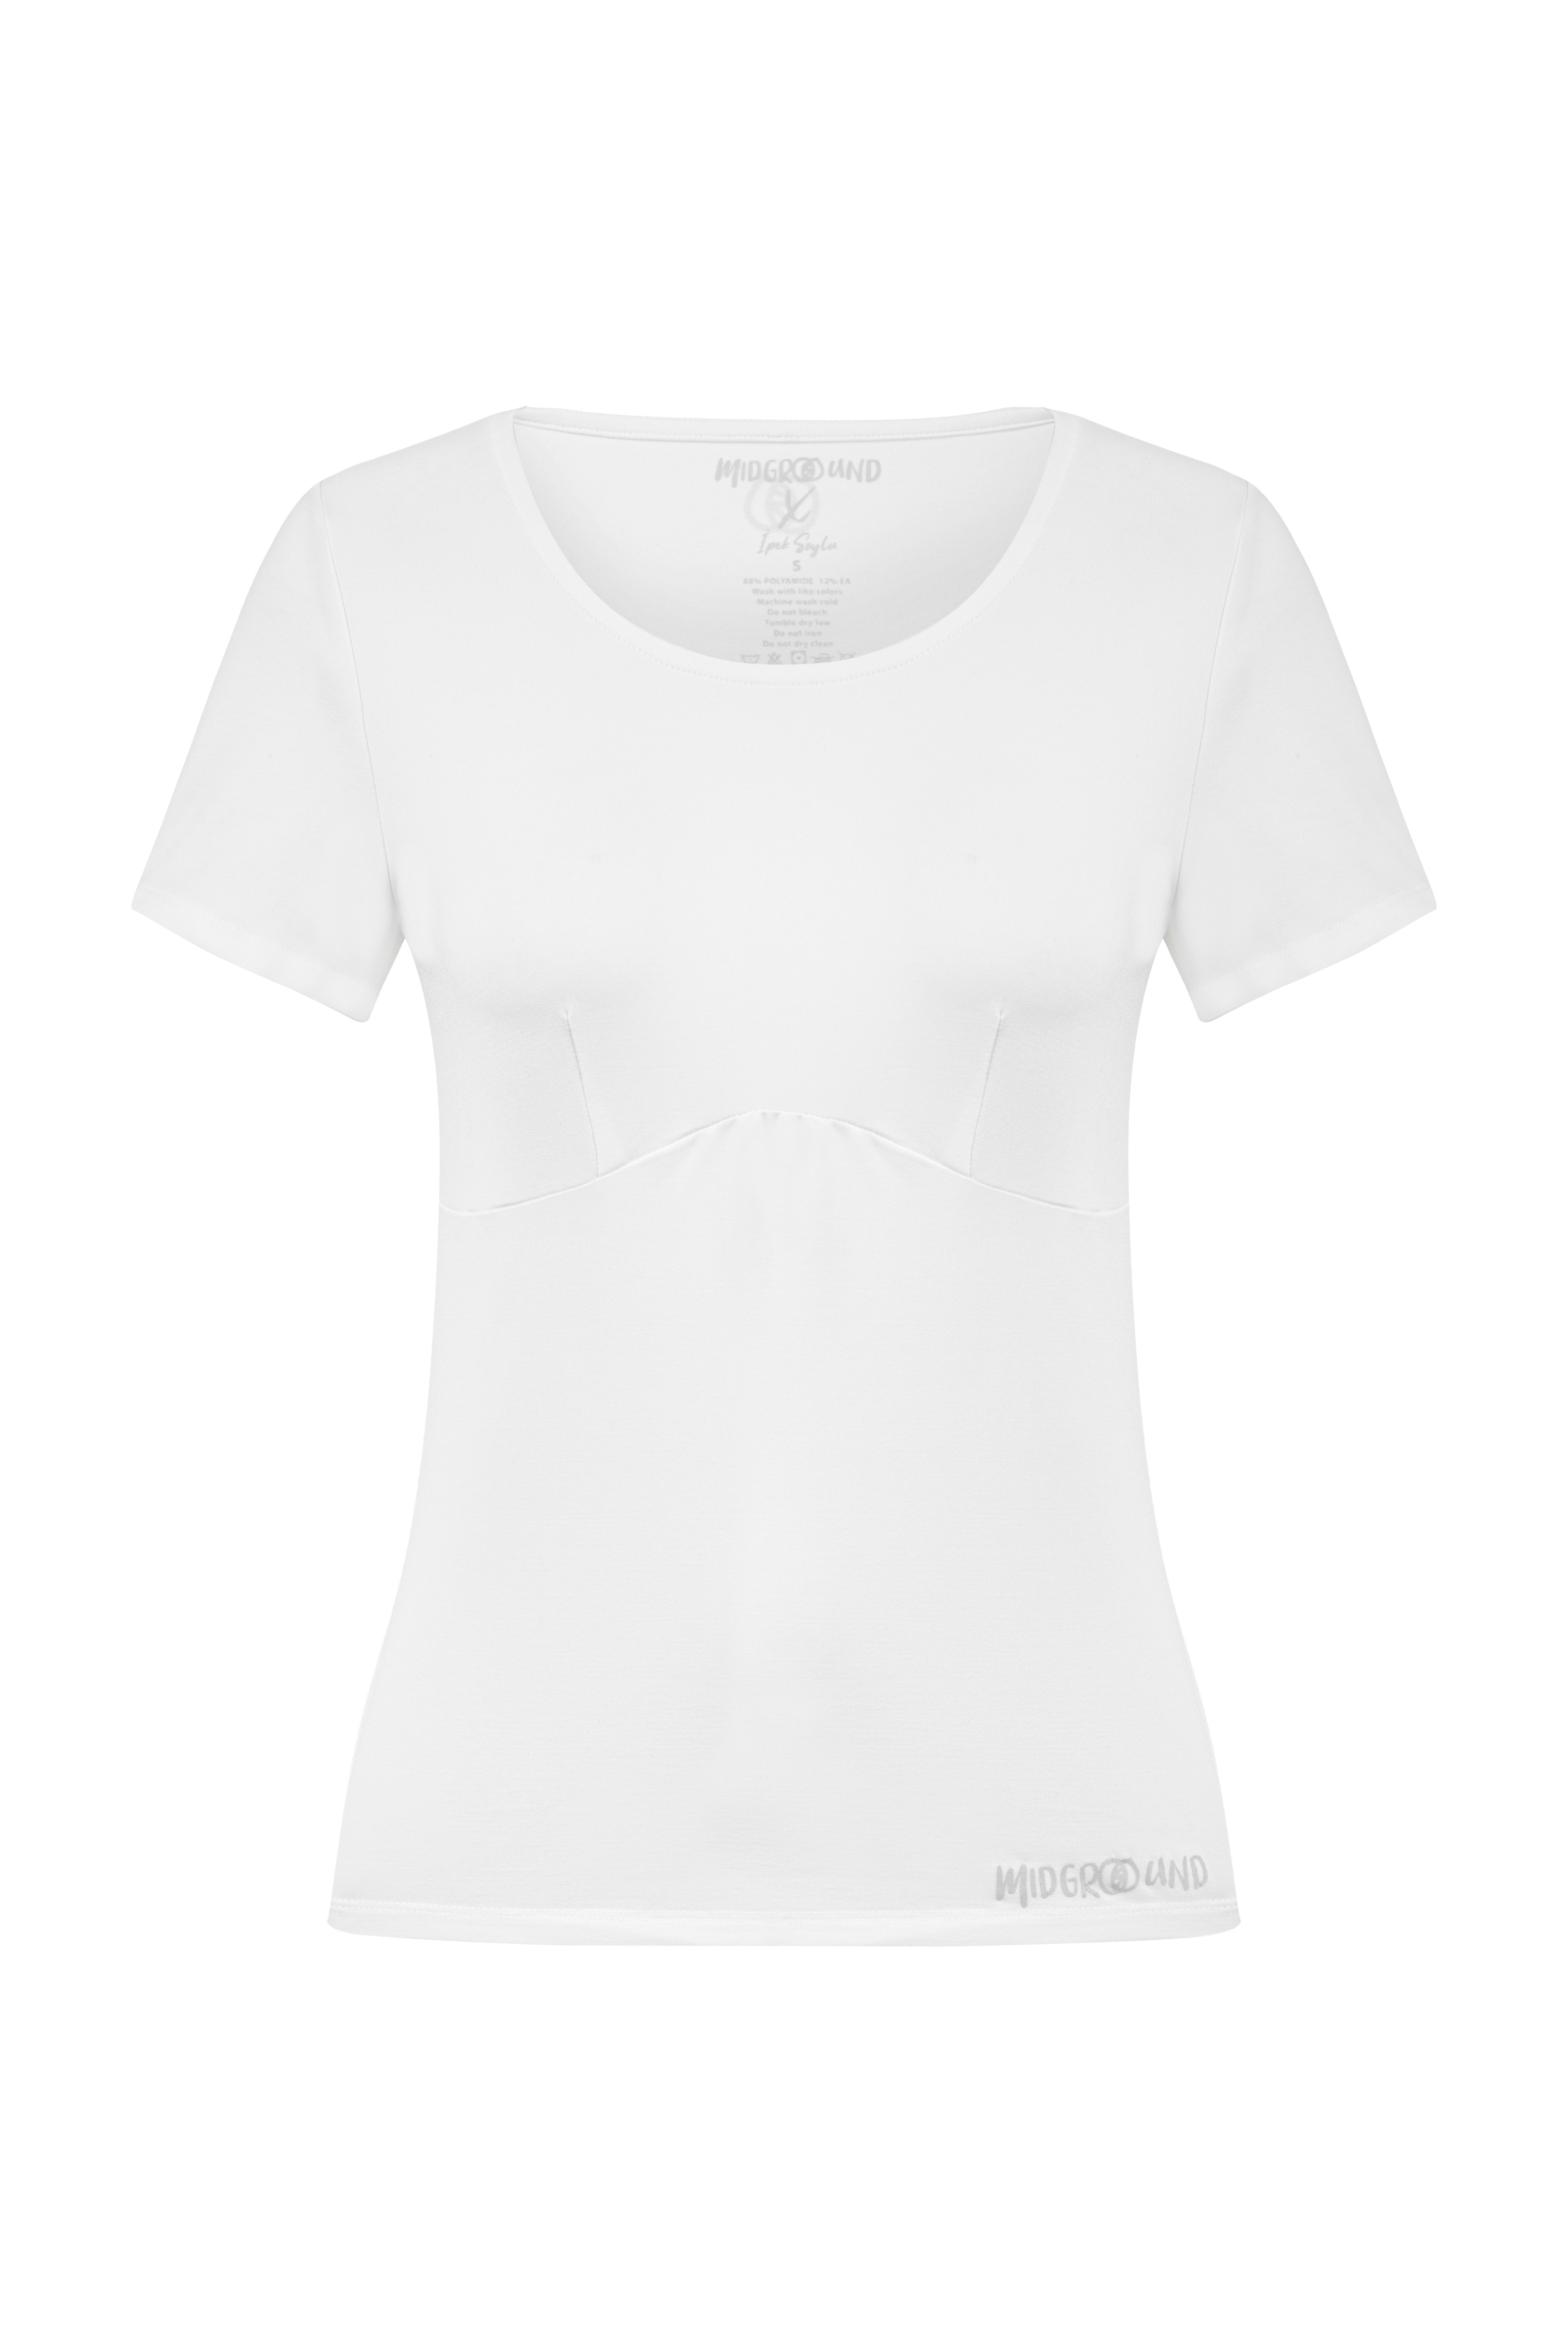 Drop#Mıdıs 014-t-shirt - White